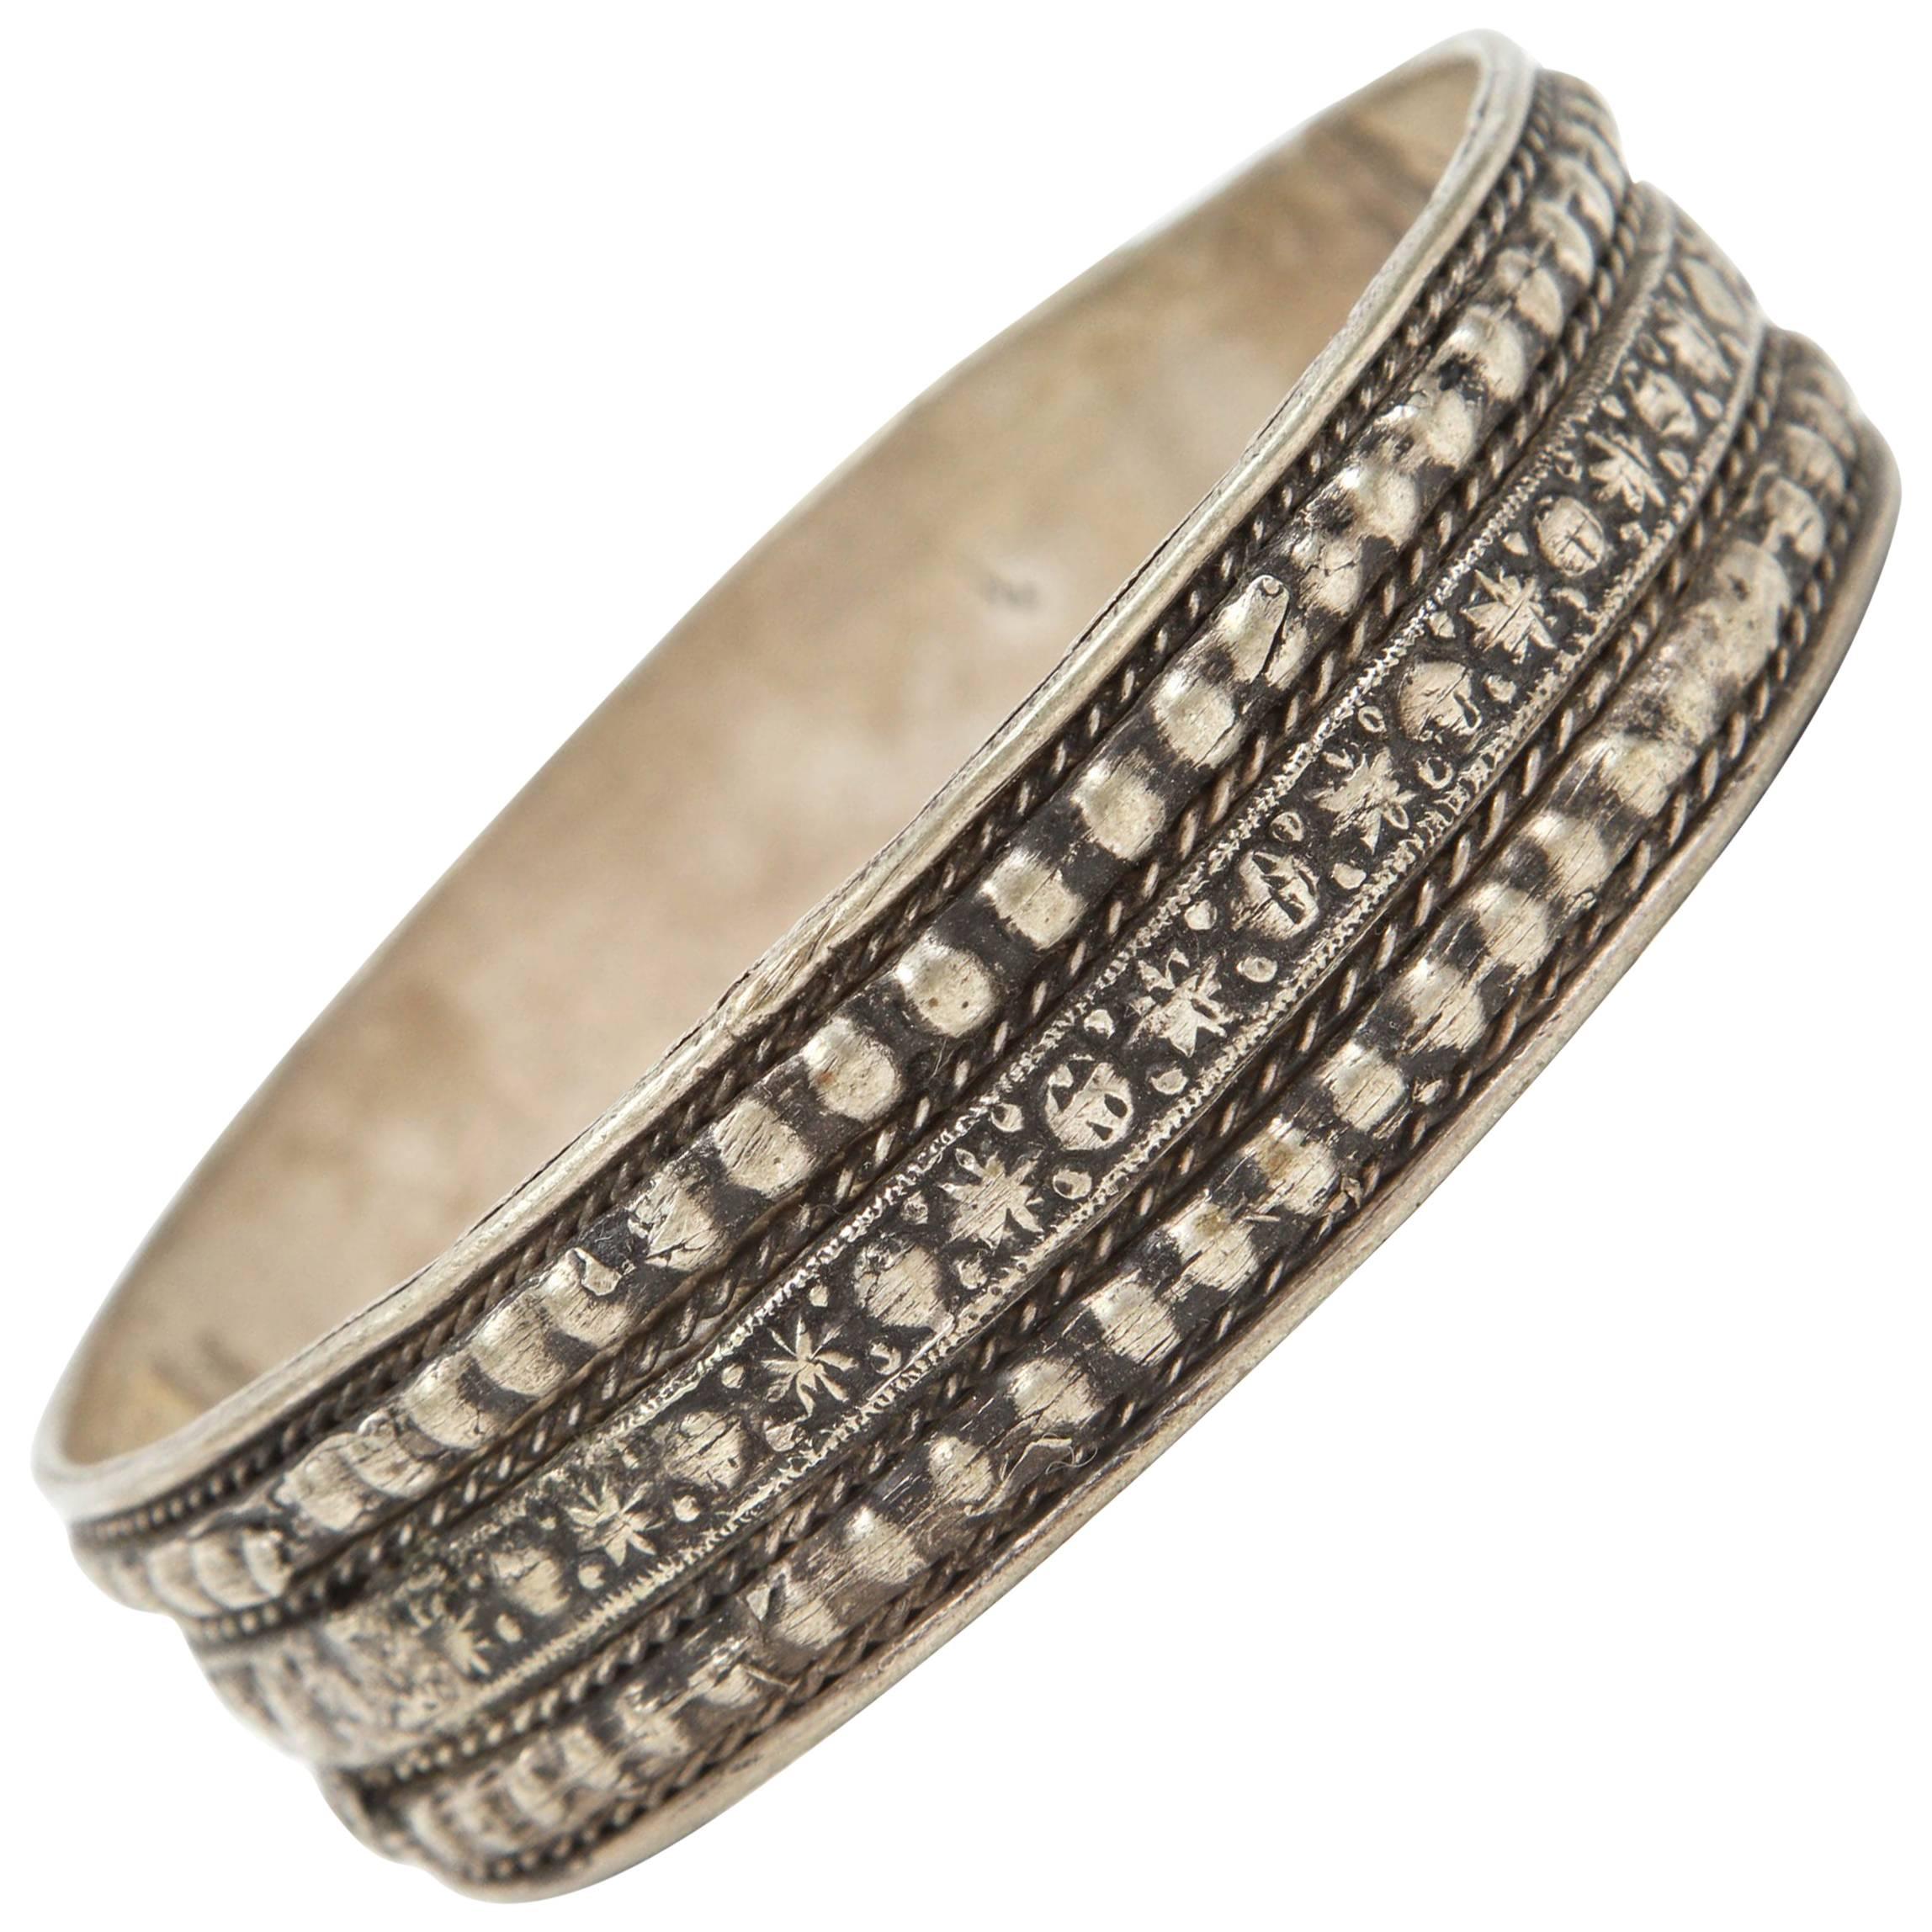 Bracelet berbère marocain vintage en argent avec motif tribal